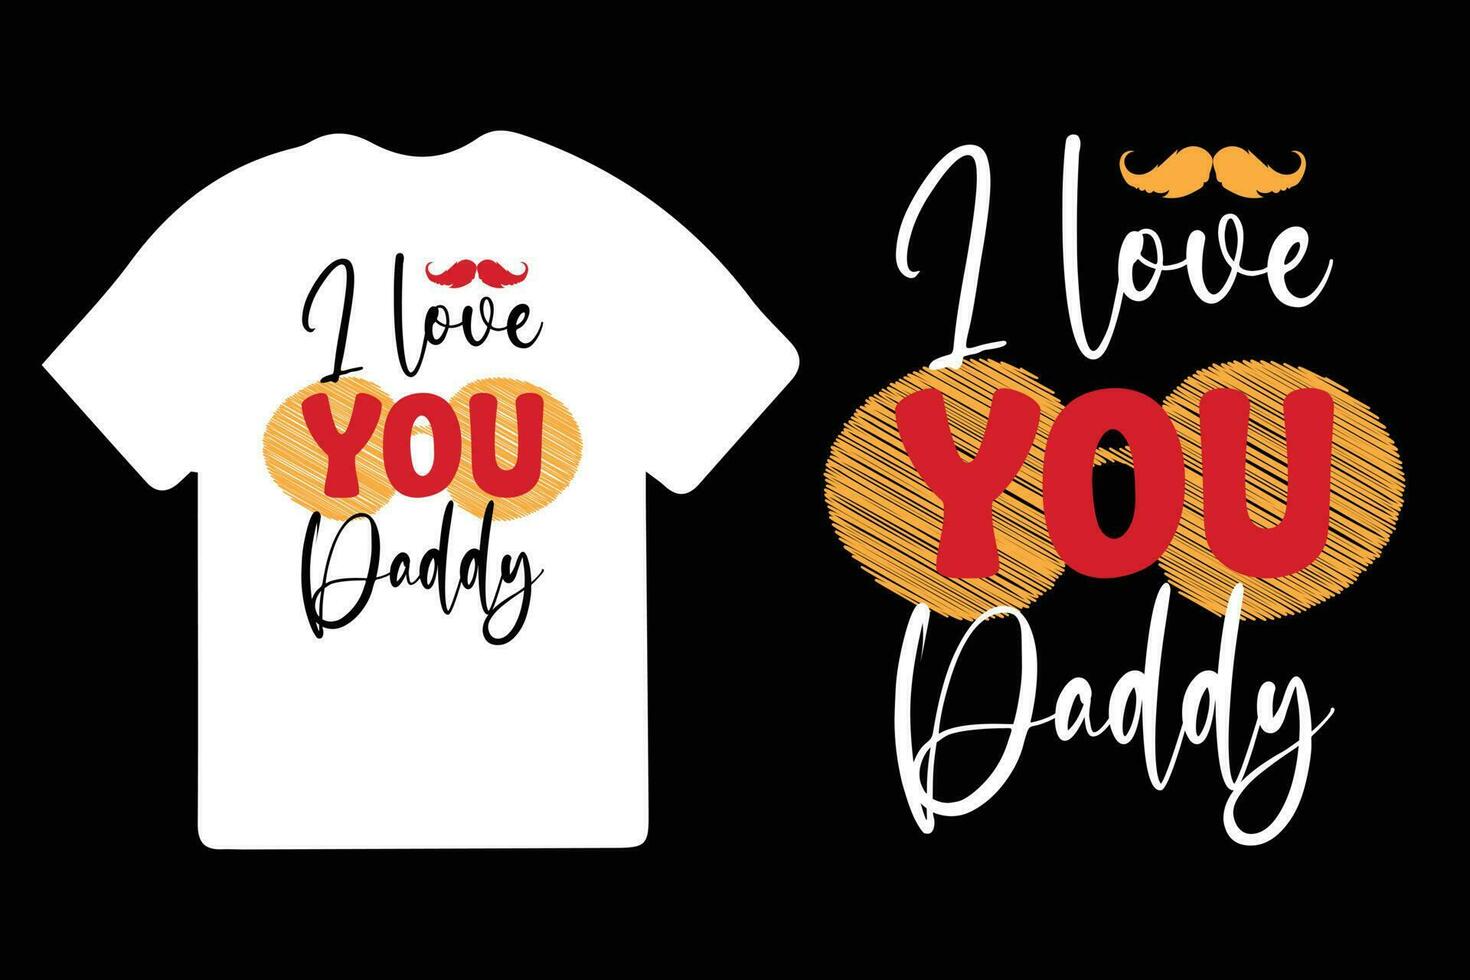 design della maglietta per la festa del papà felice vettore